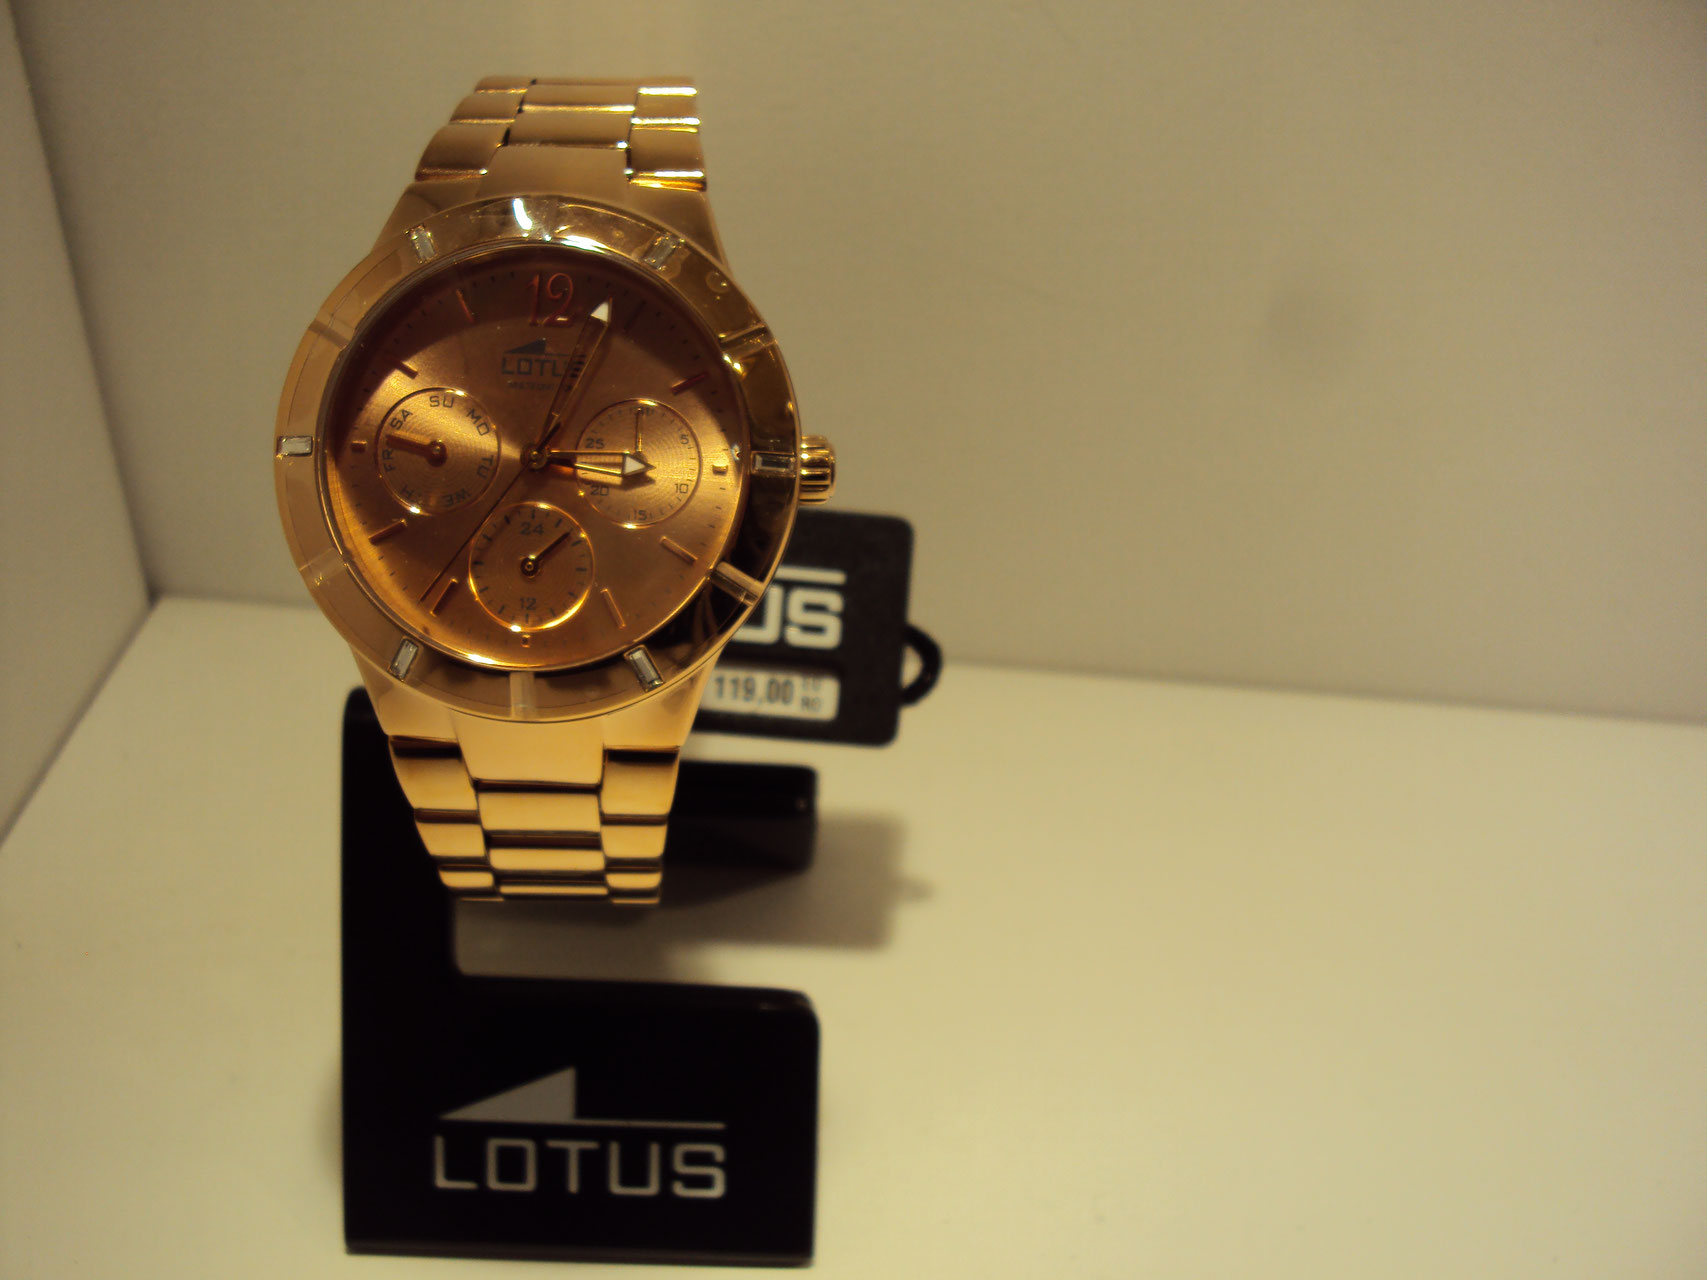 Reloj Lotus mujer cobrizo Multifunción.119€